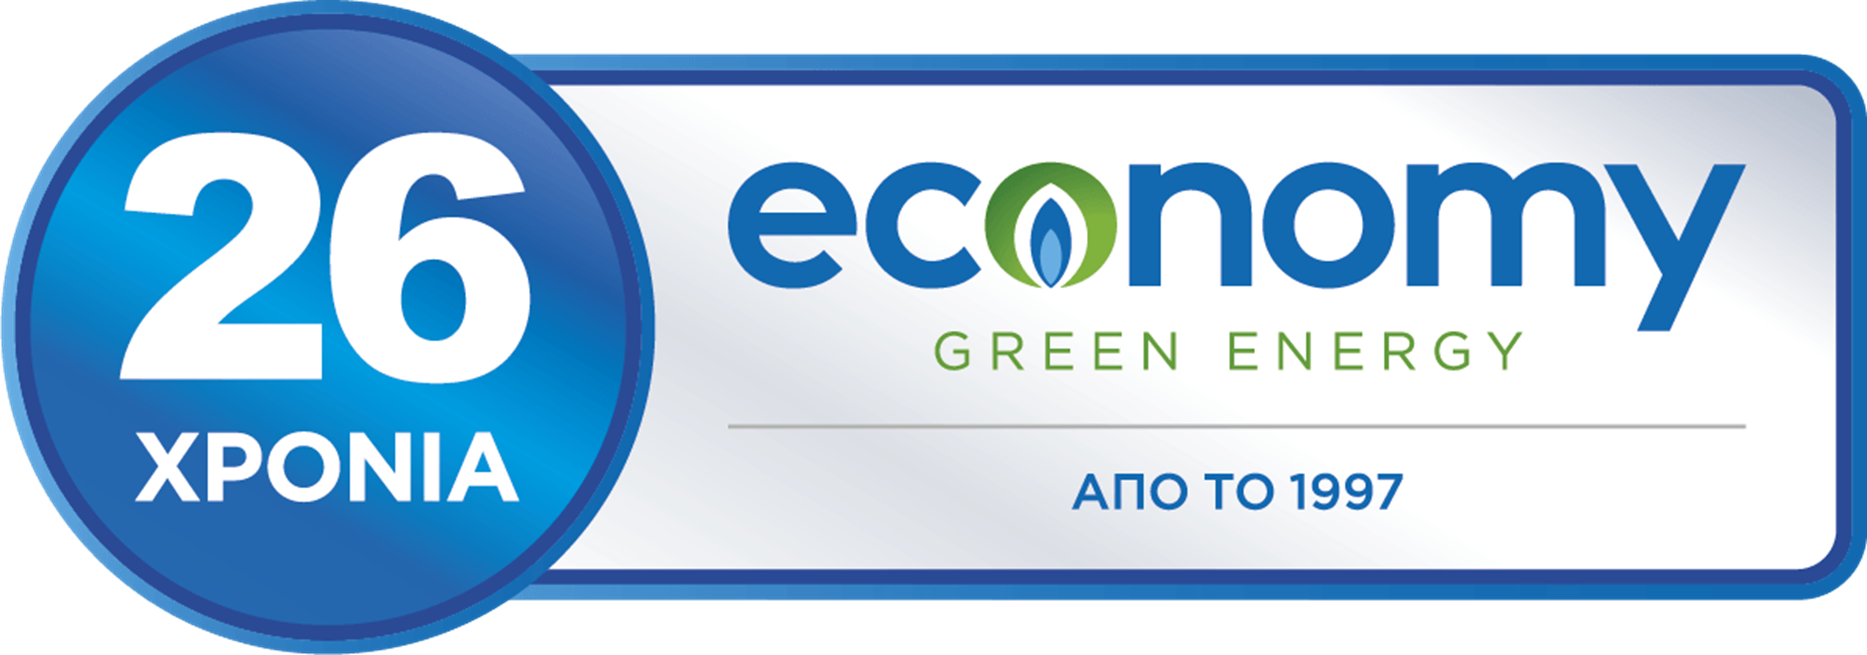 economy logo